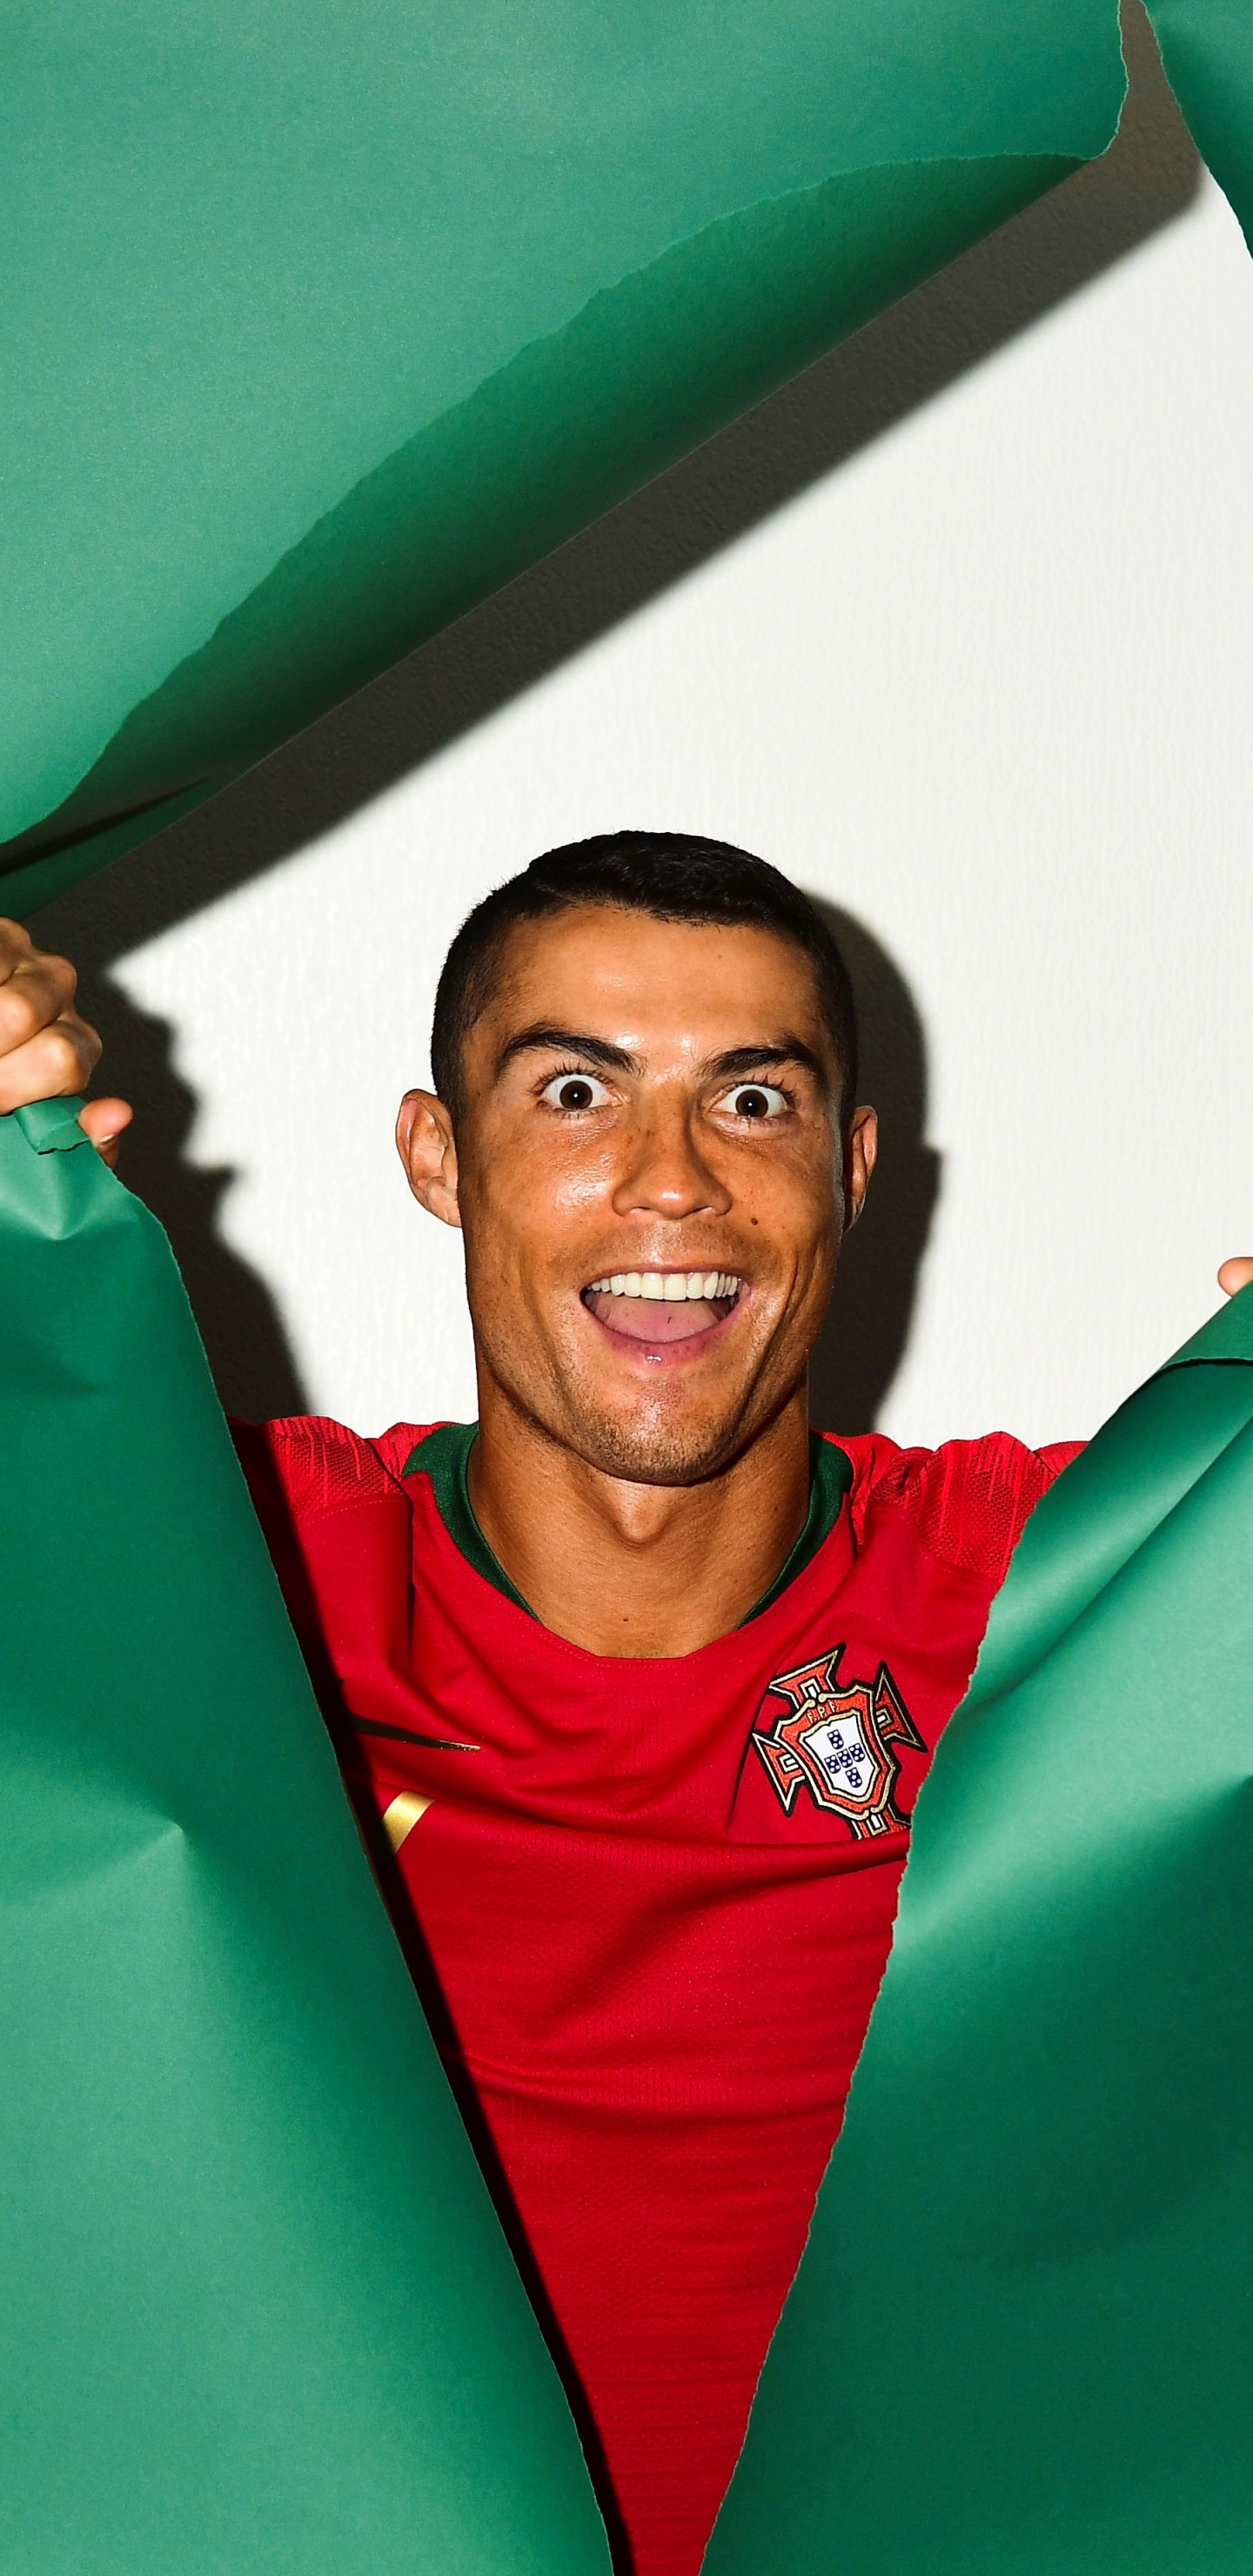 Download 1440x2960 Wallpaper Footballer Cristiano Ronaldo